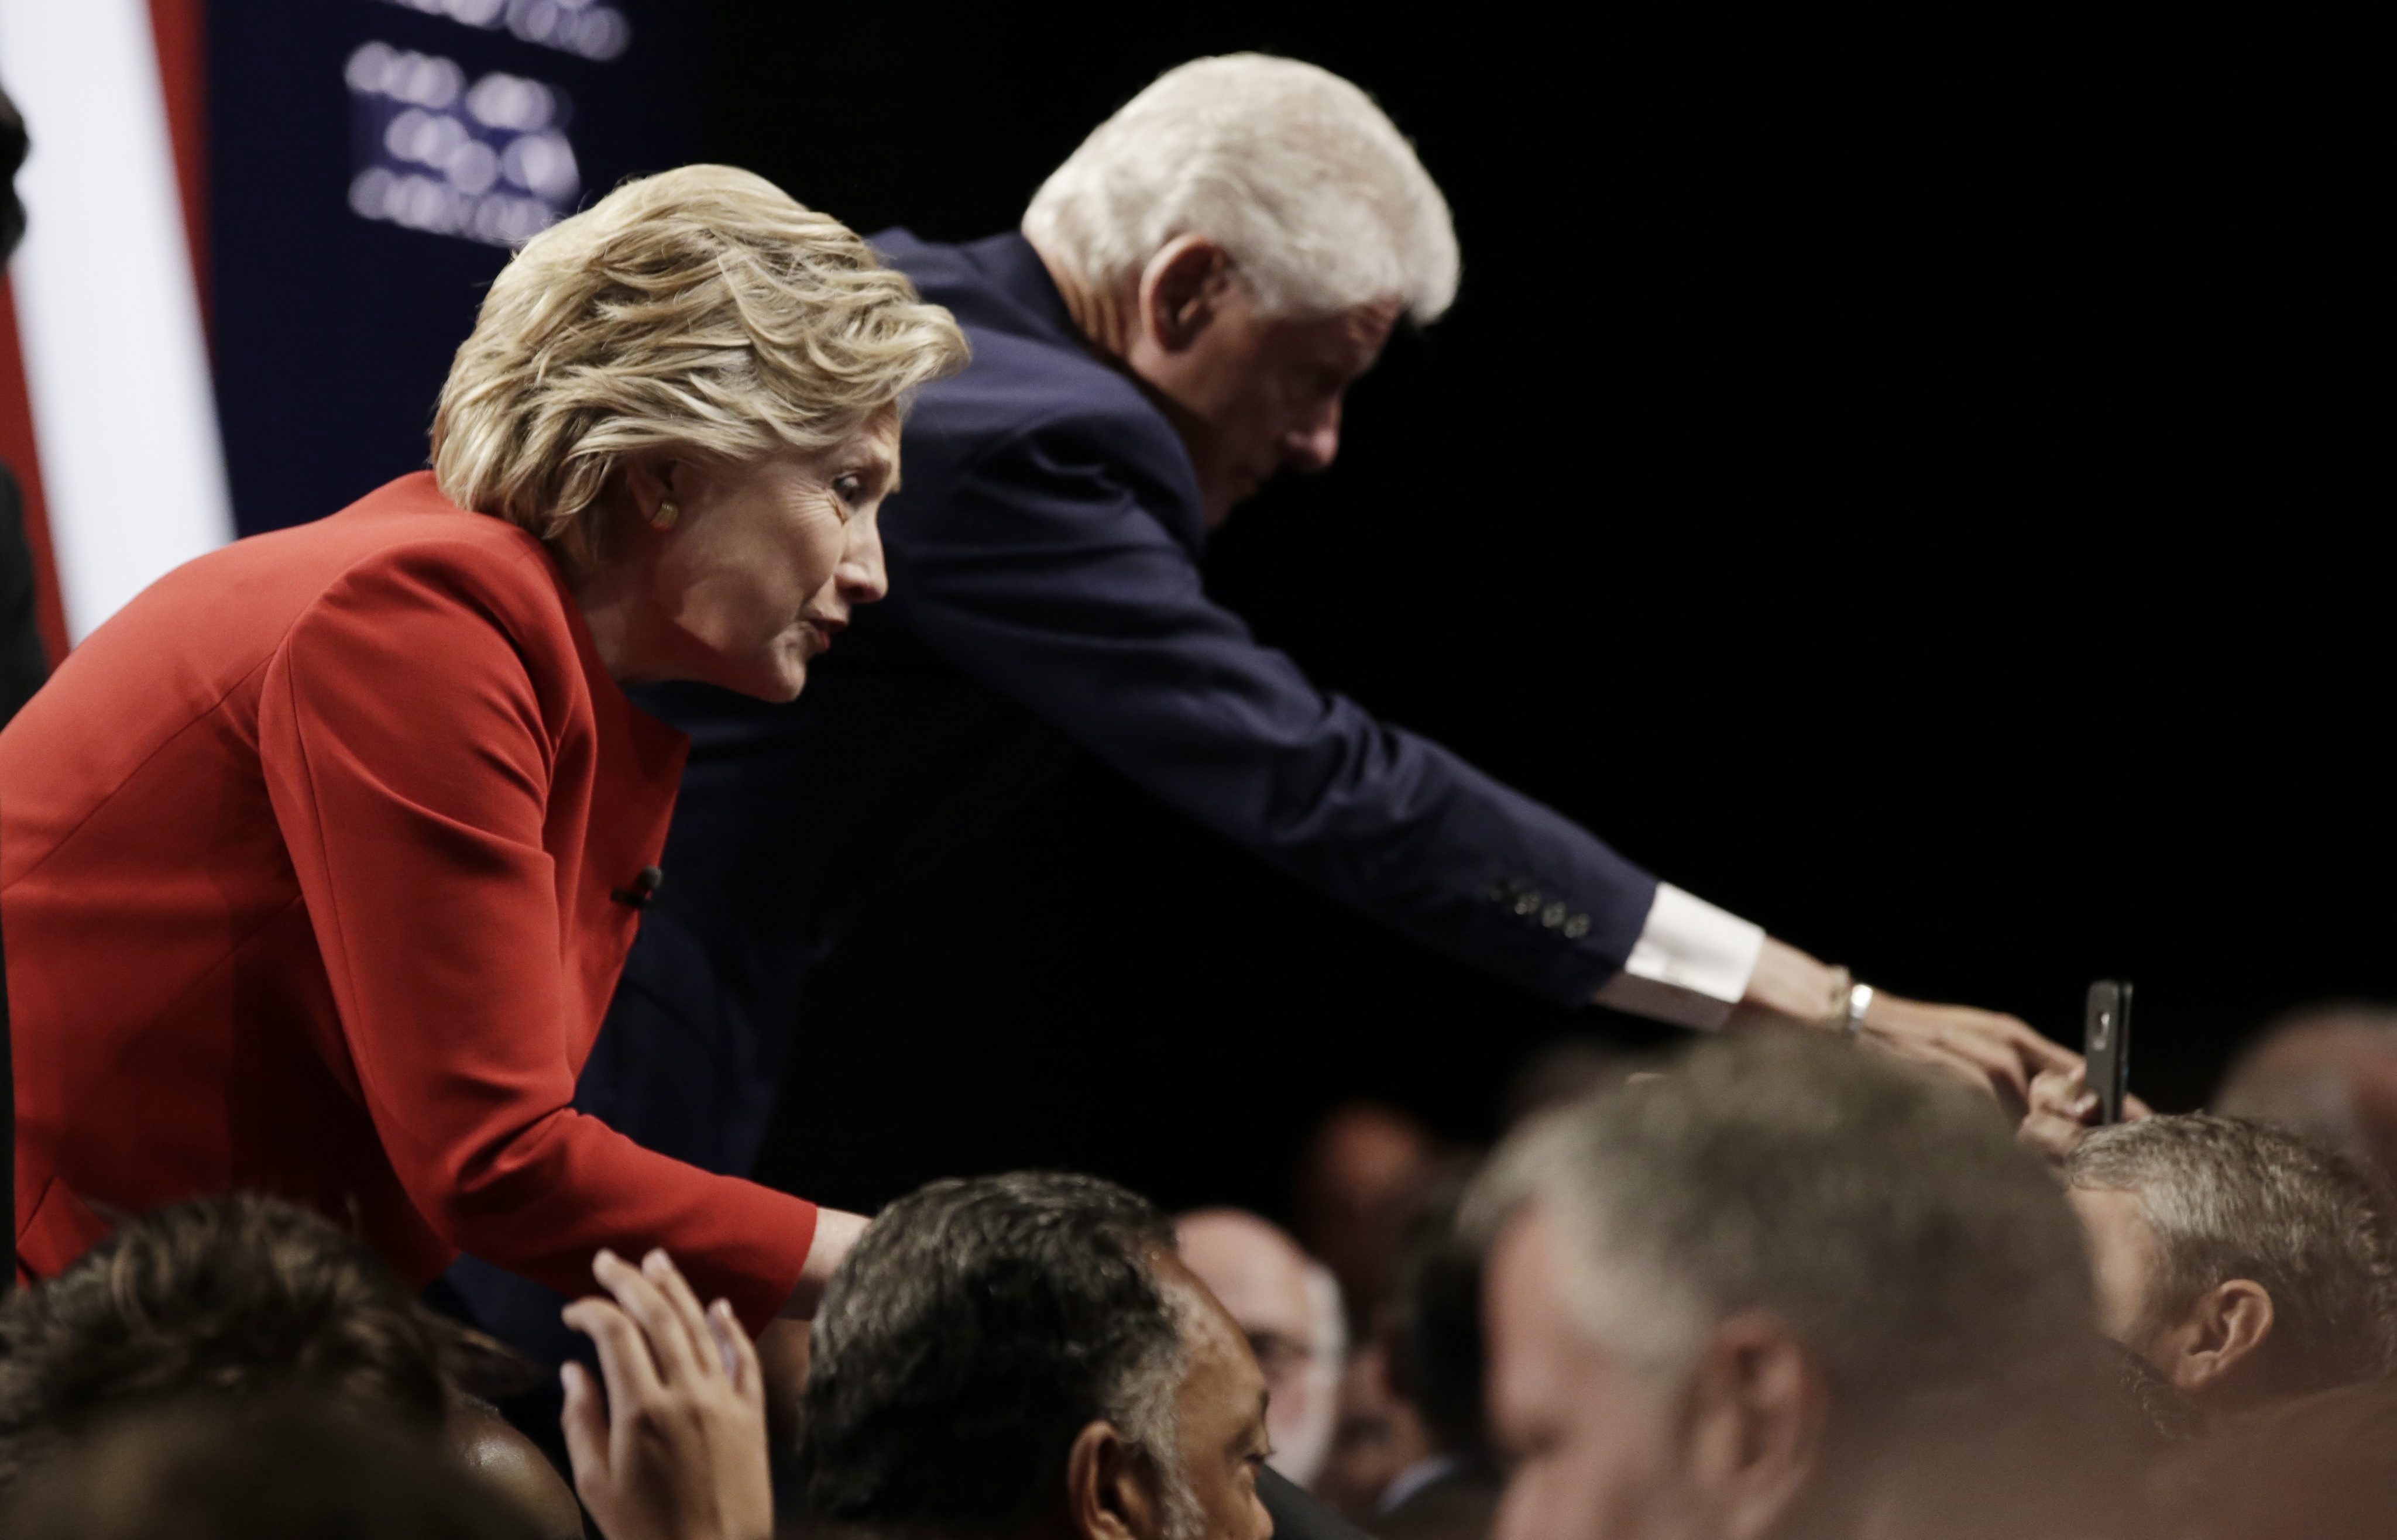 С учтиво ръкостискане започна първият телевизионен дебат по Си Ен Ен между двамата непримирими съперници за поста президент на САЩ. В крайна сметка обаче зрителите дадоха доверието си на Клинтън - според 62 на сто от тях тя е била по-убедителна. Републиканецът спечели 27 на сто одобрение.